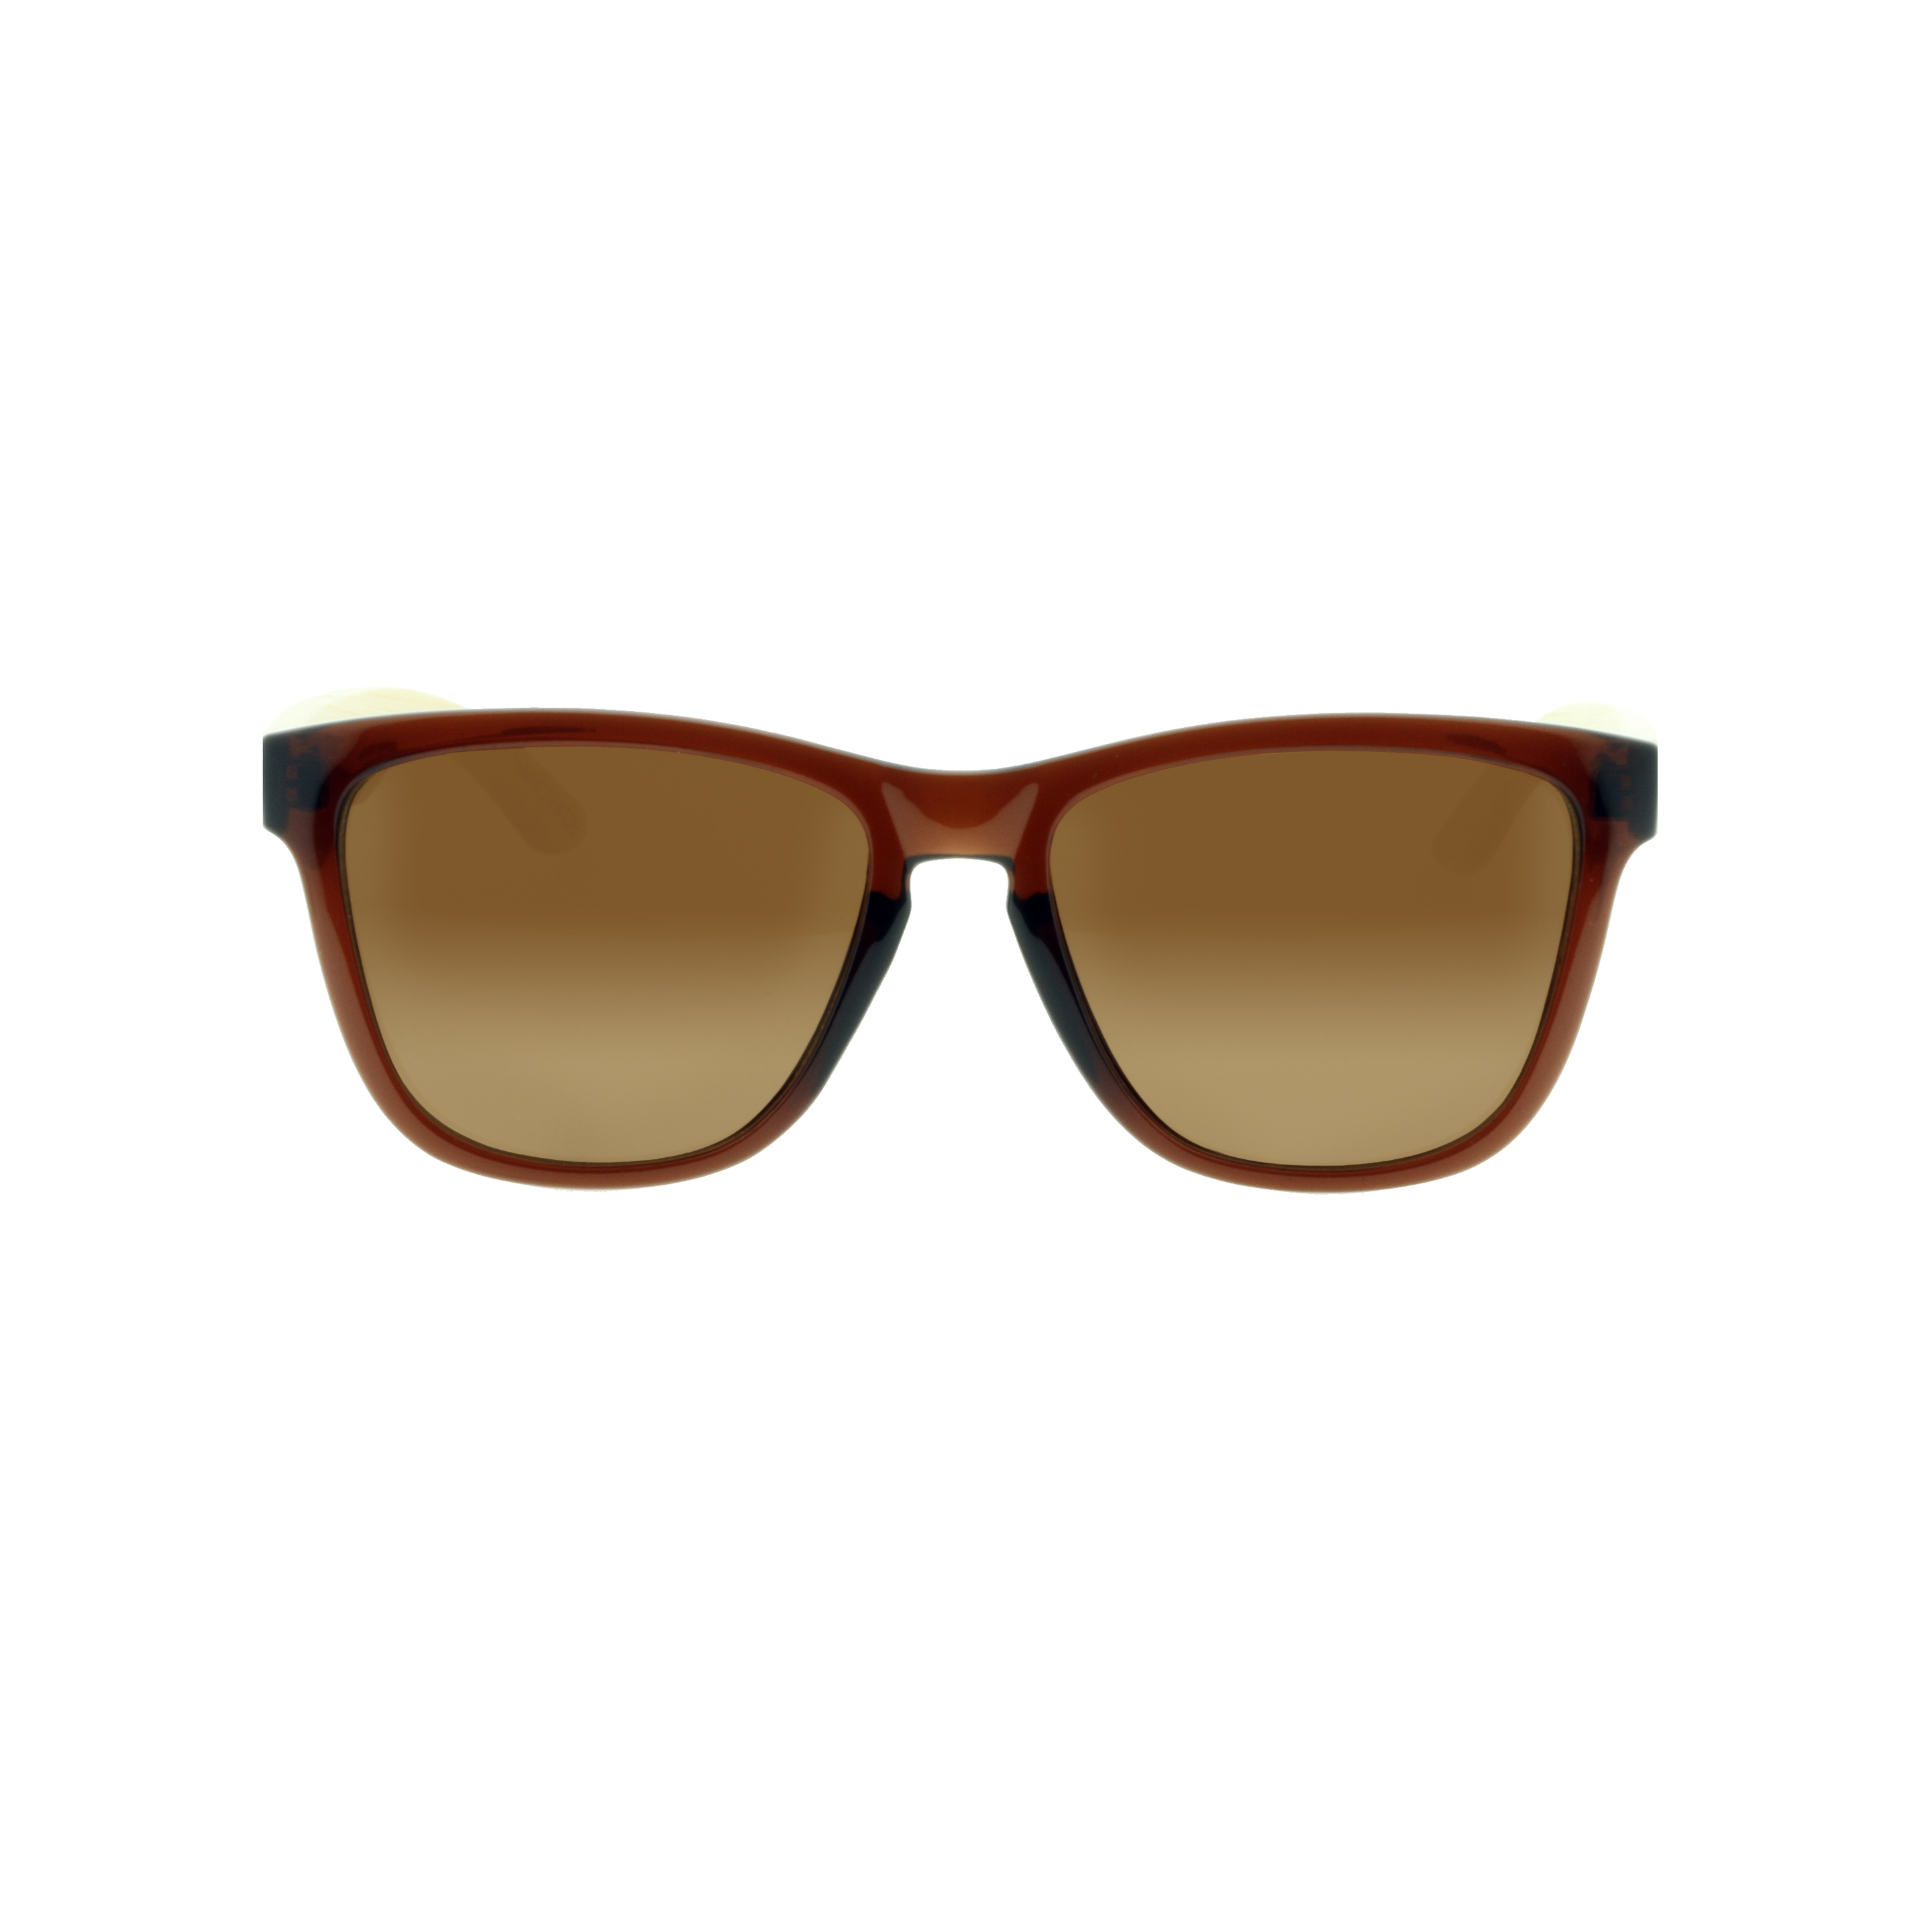 Gafas De Sol Feler | Regular Hibrid 3 - Marron - Cuadrada  MKP